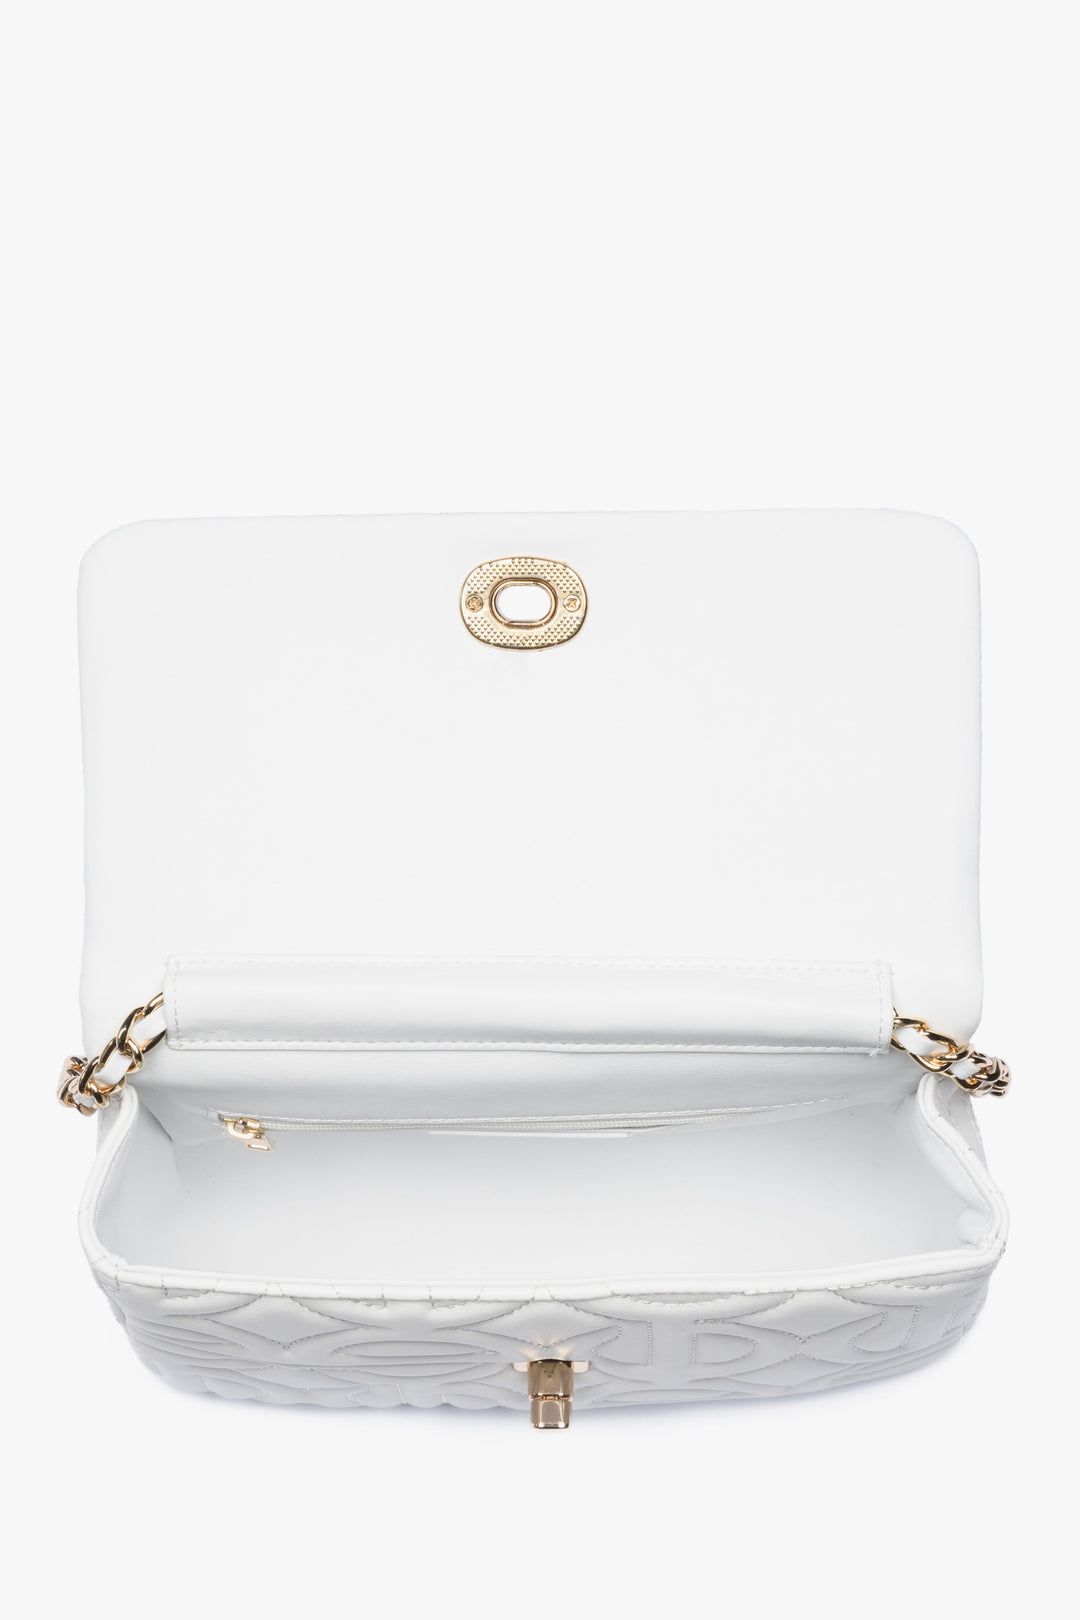 Mała biała torebka damska ze złotym łańcuszkiem Estro ER00112087